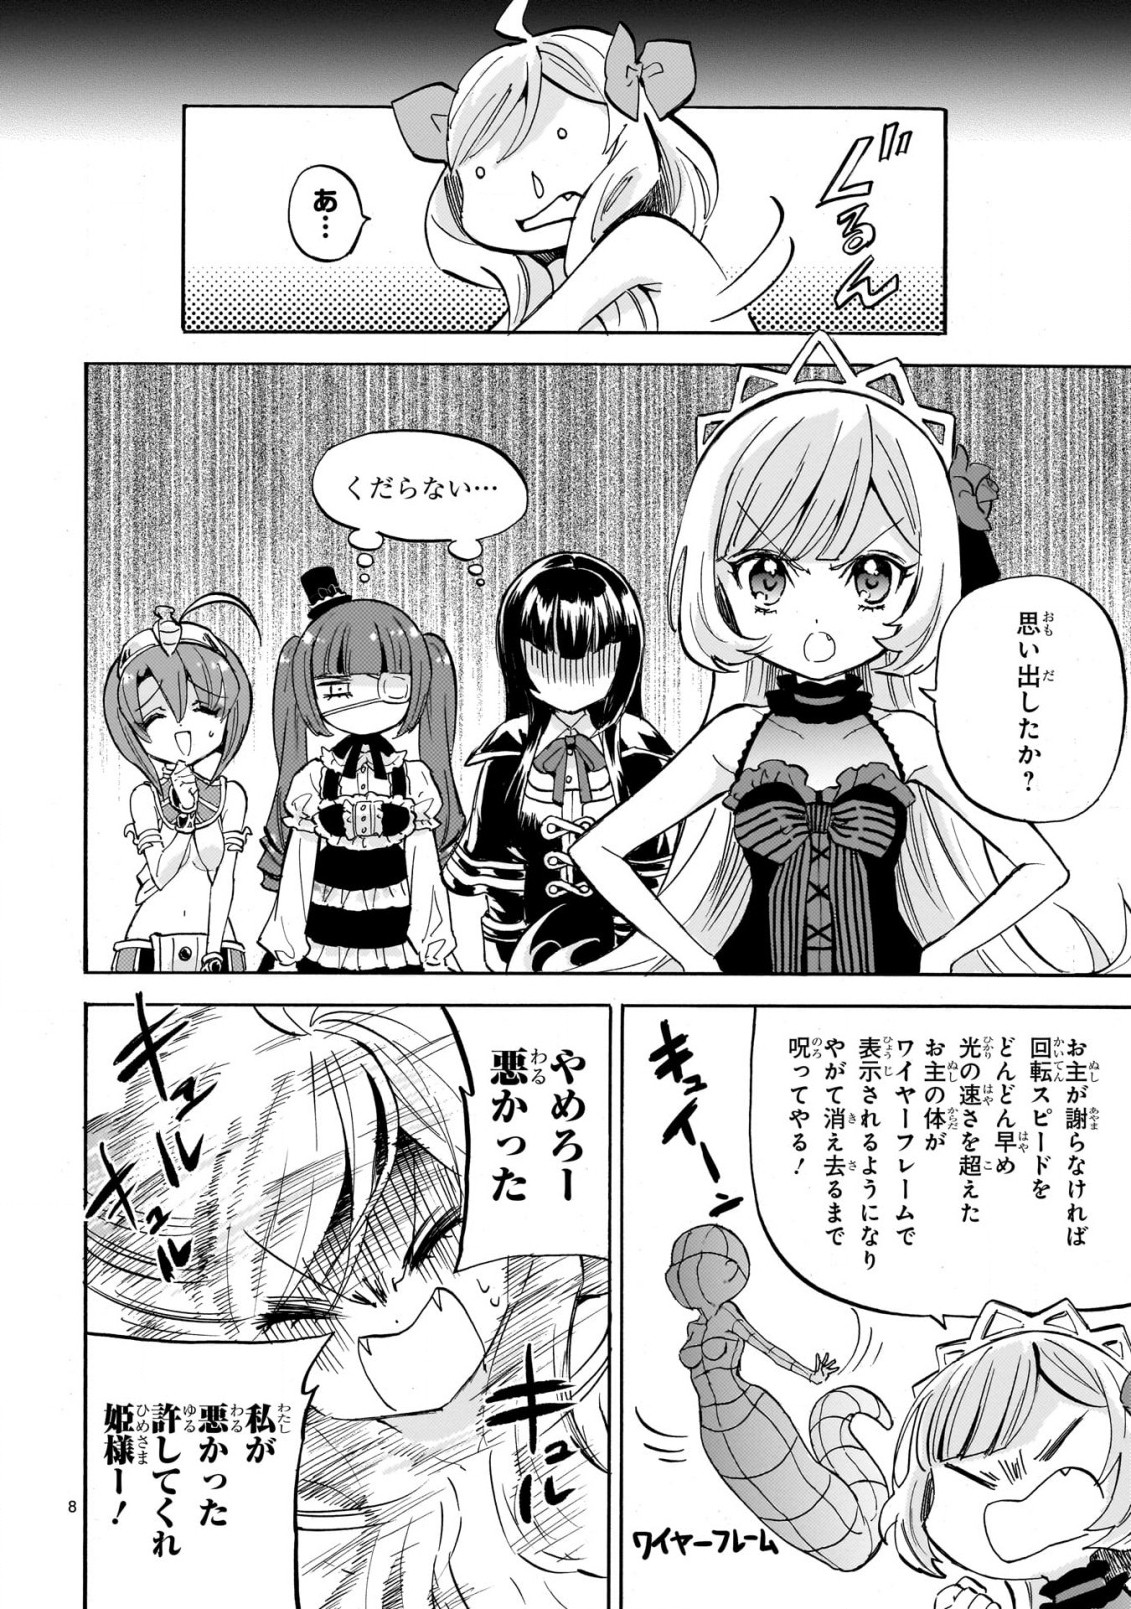 Jashin-chan Dropkick - Chapter 226 - Page 8